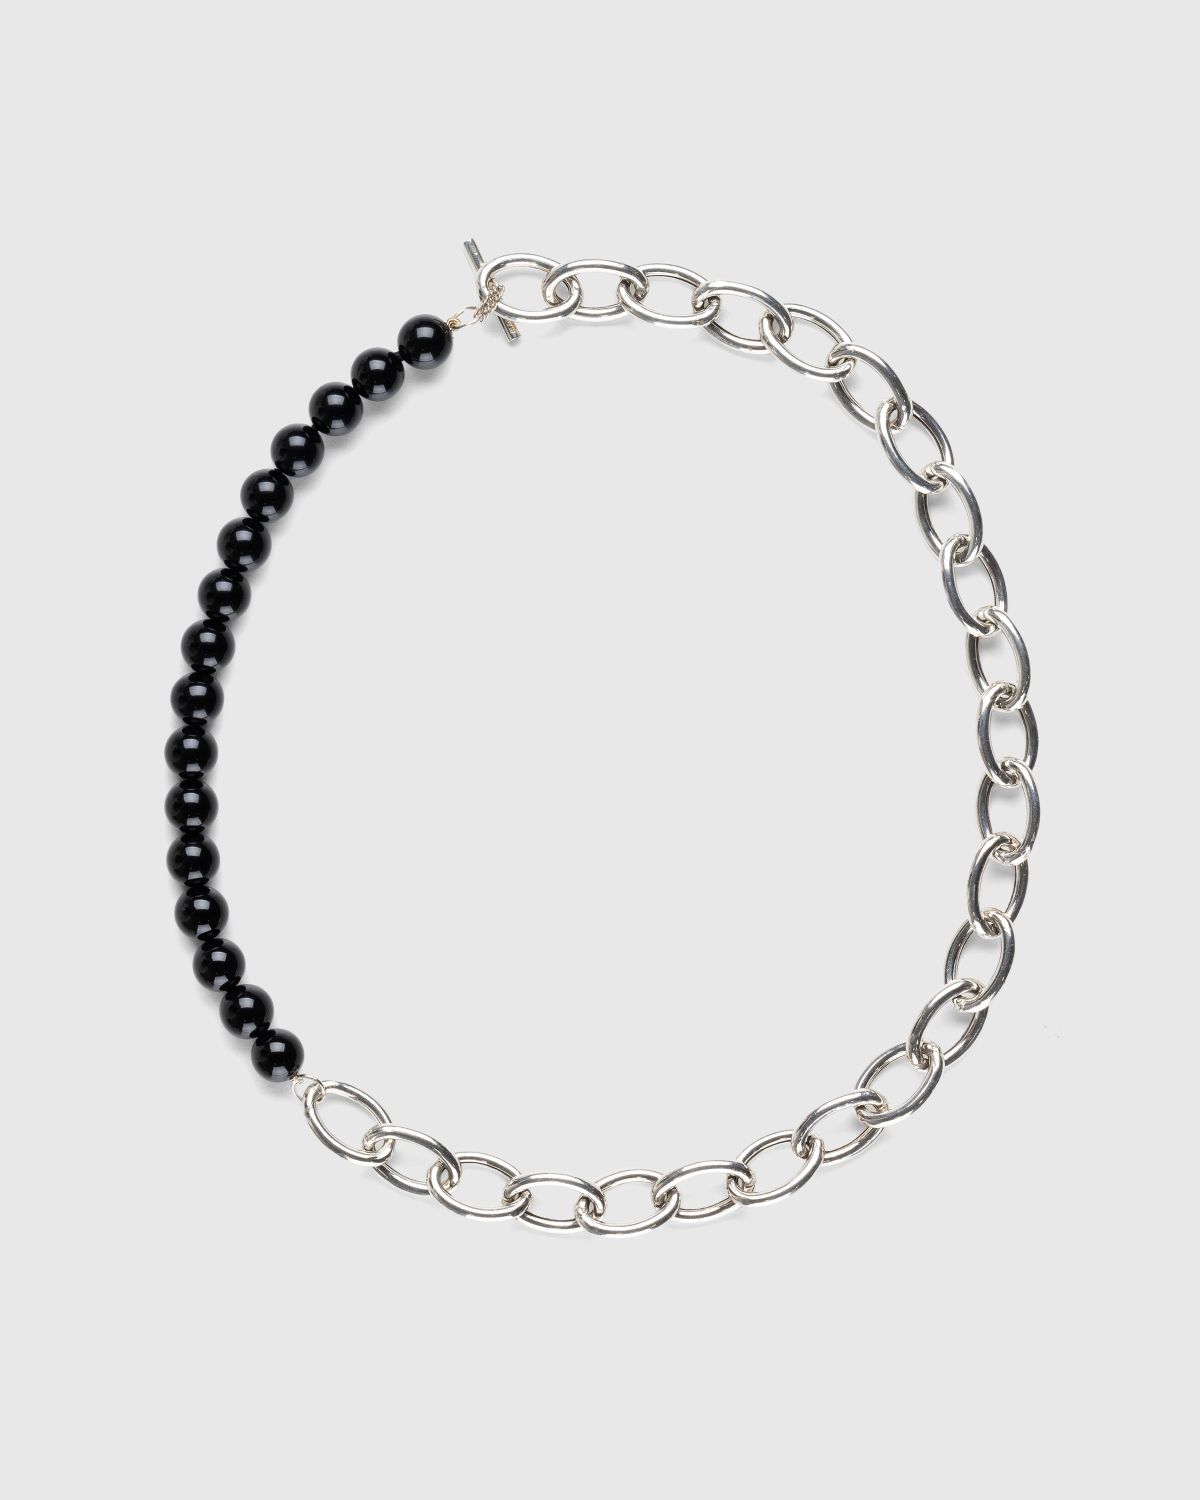 Jil Sander – Solidity Necklace 4 Silver/Black | Highsnobiety Shop